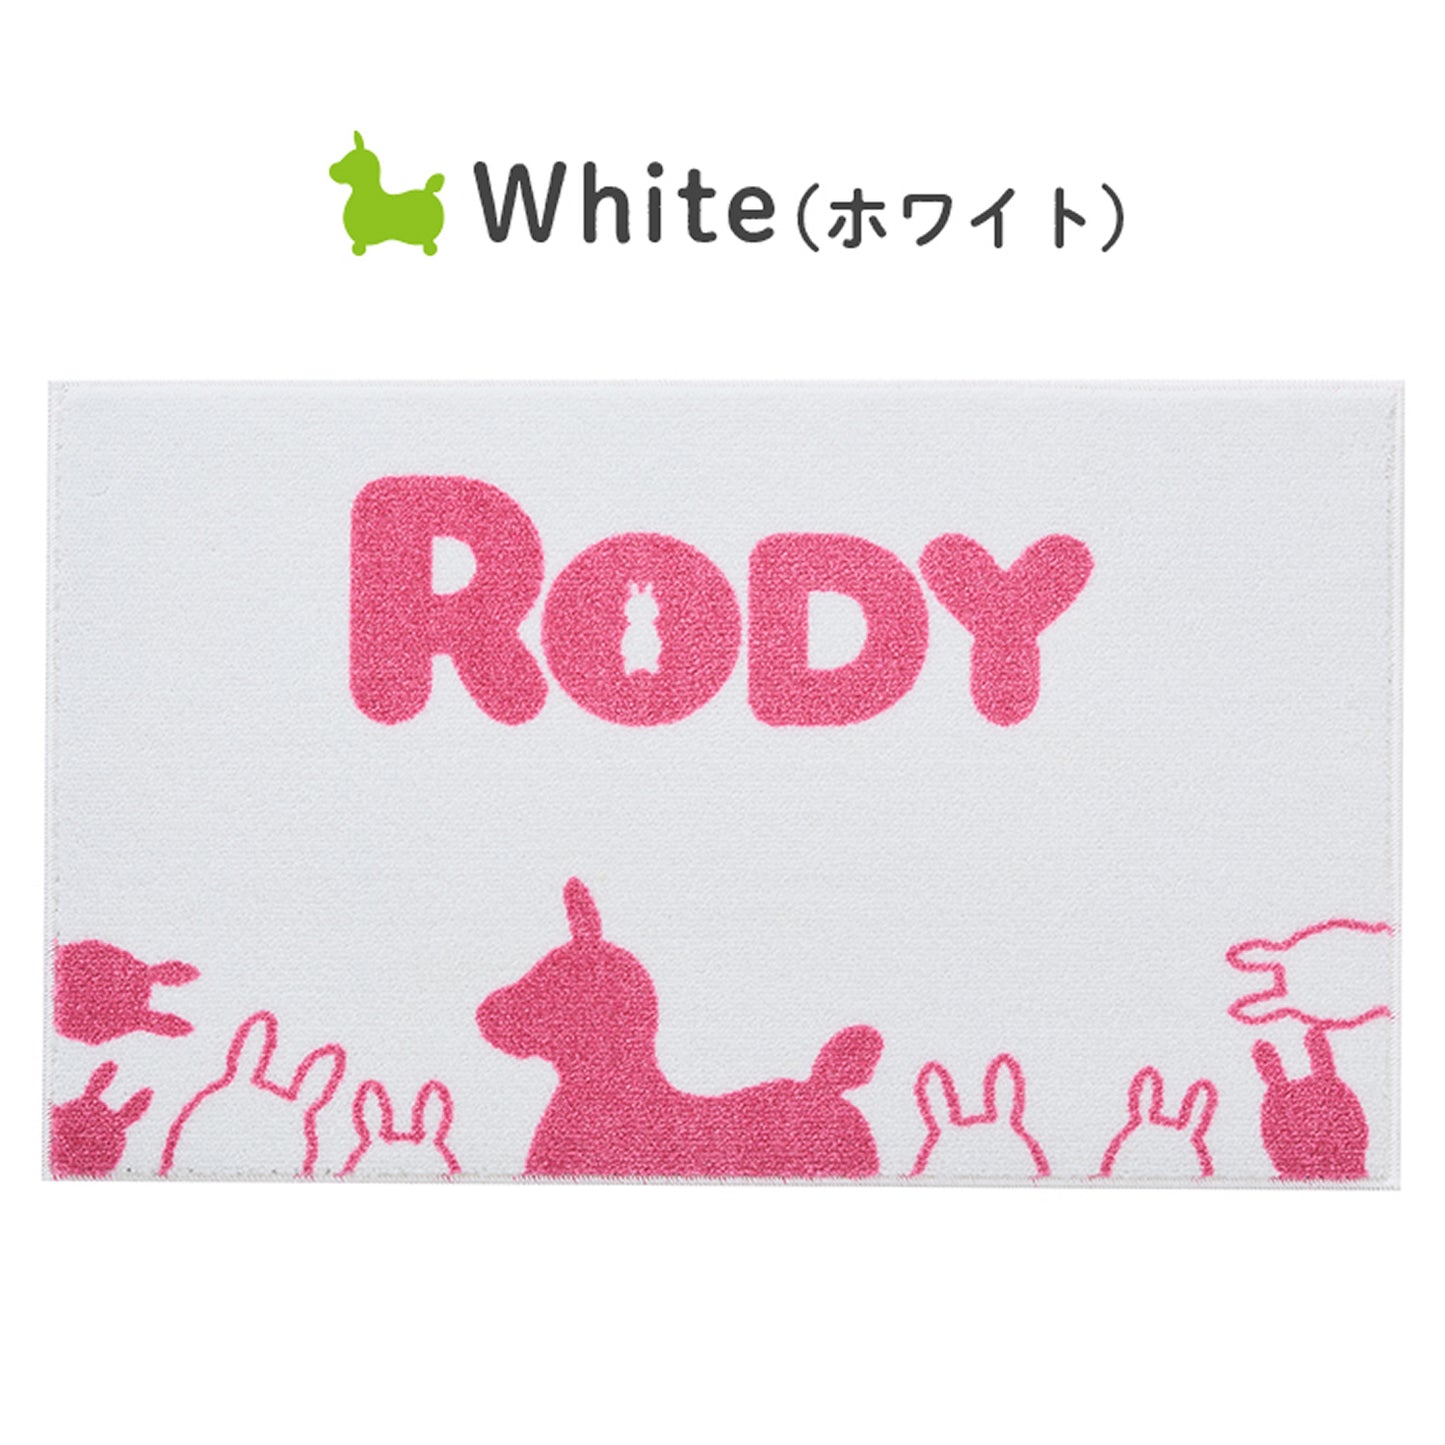 【送料無料・メーカー直送・ラッピング不可】ロディ 室内マット Simple Rody